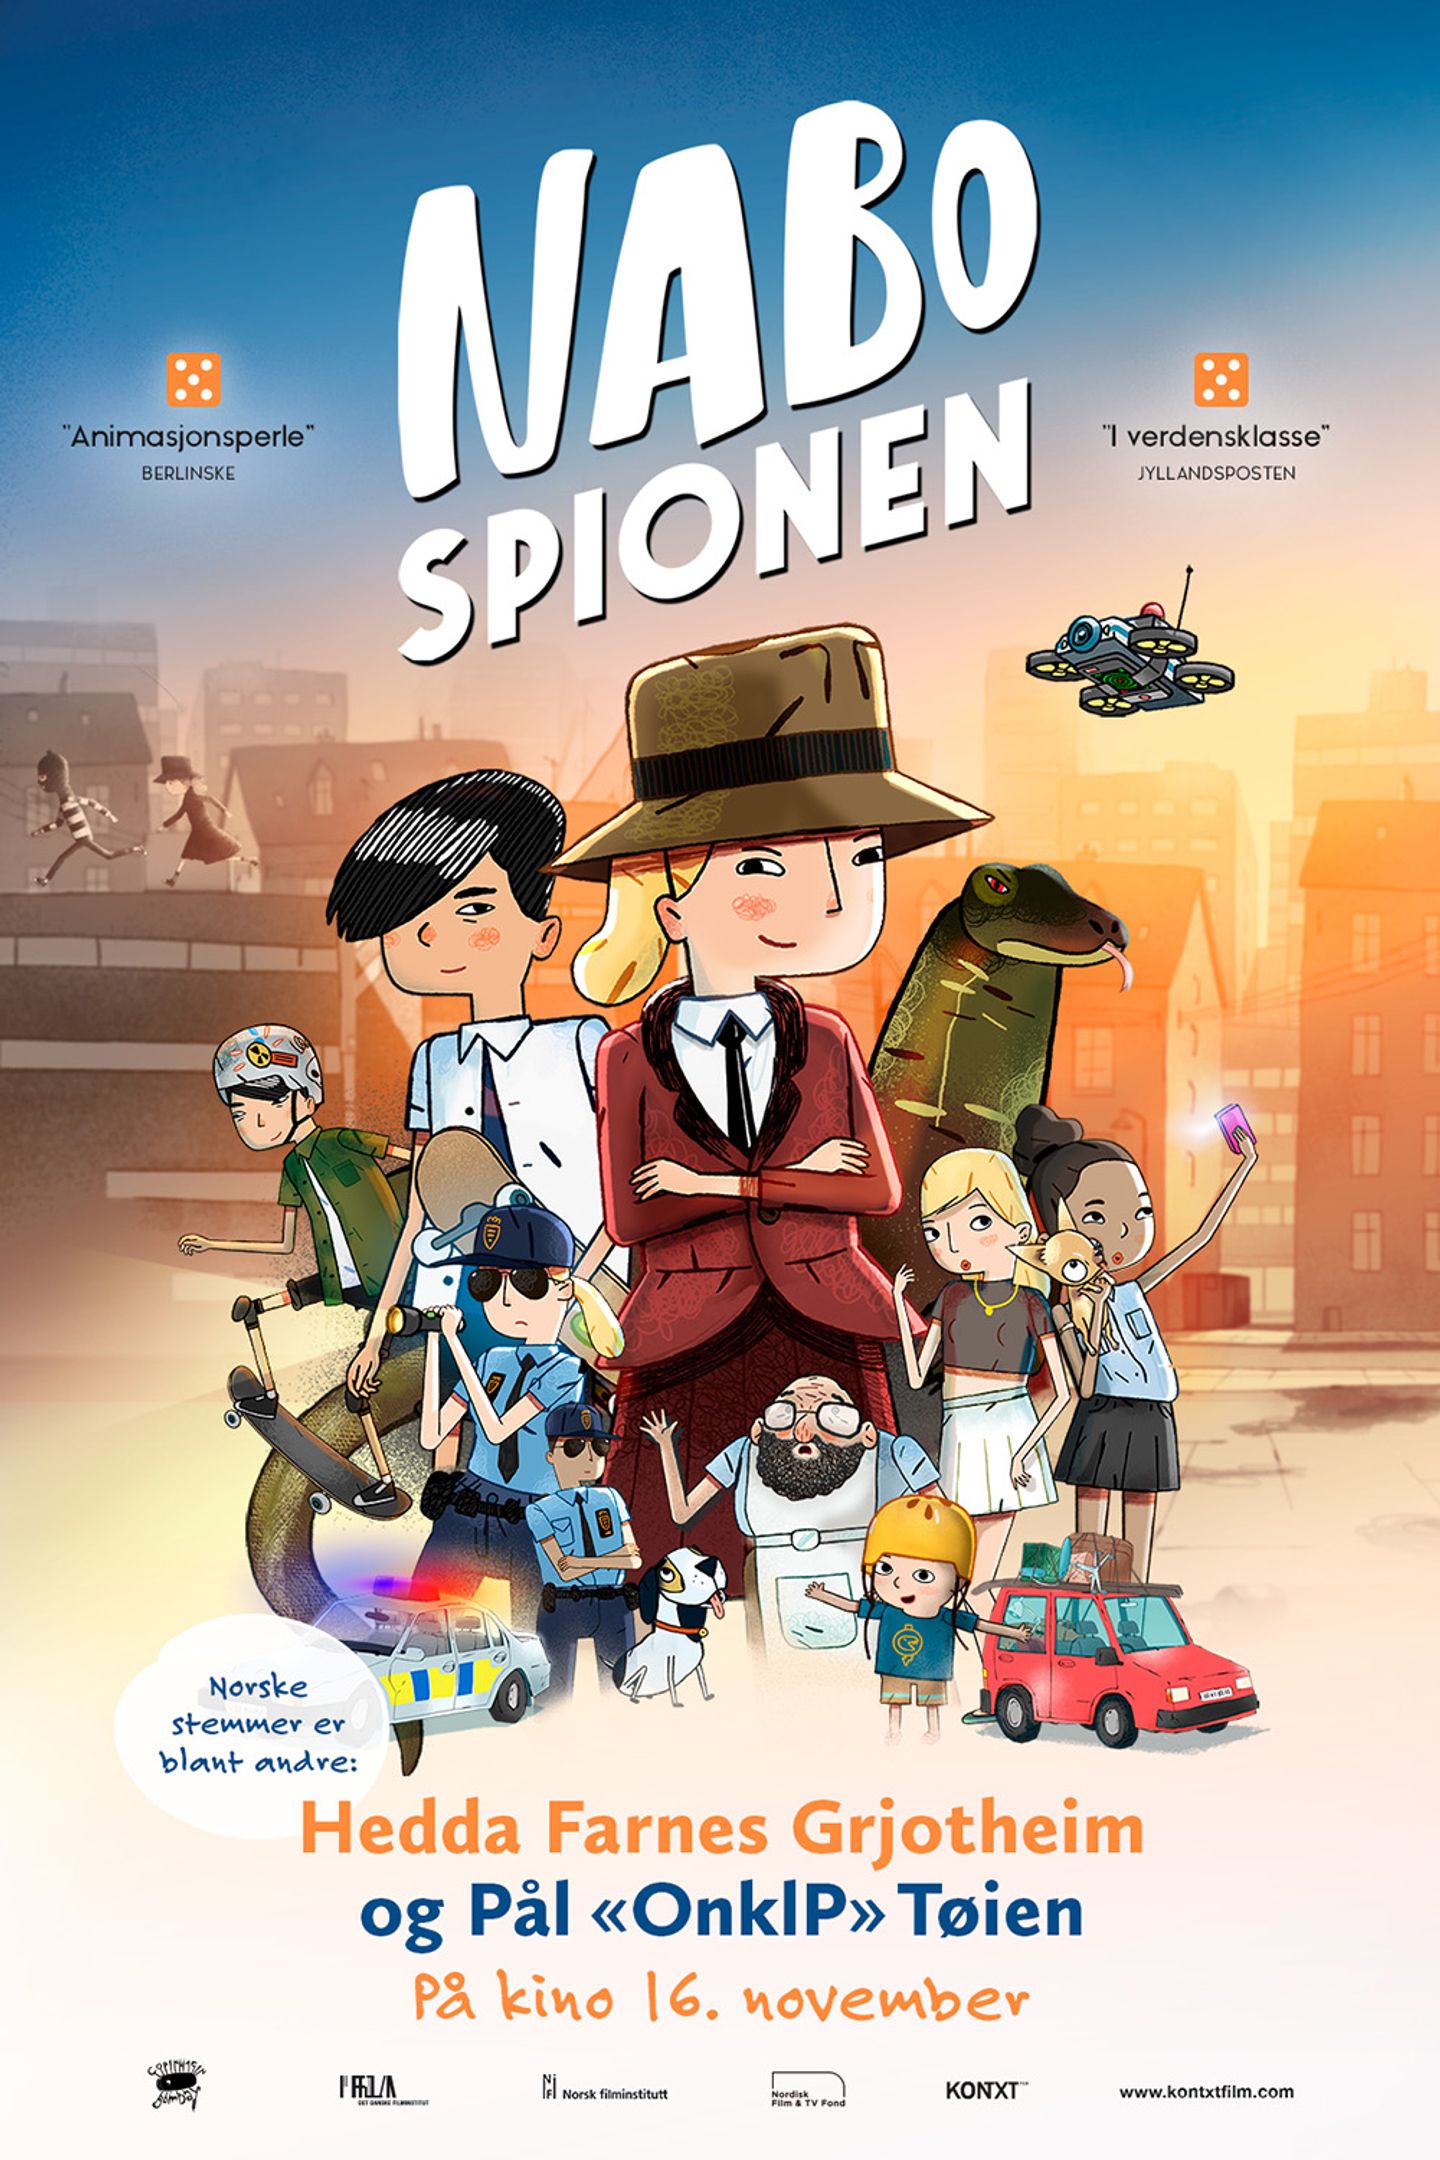 Plakat for 'Nabospionen'